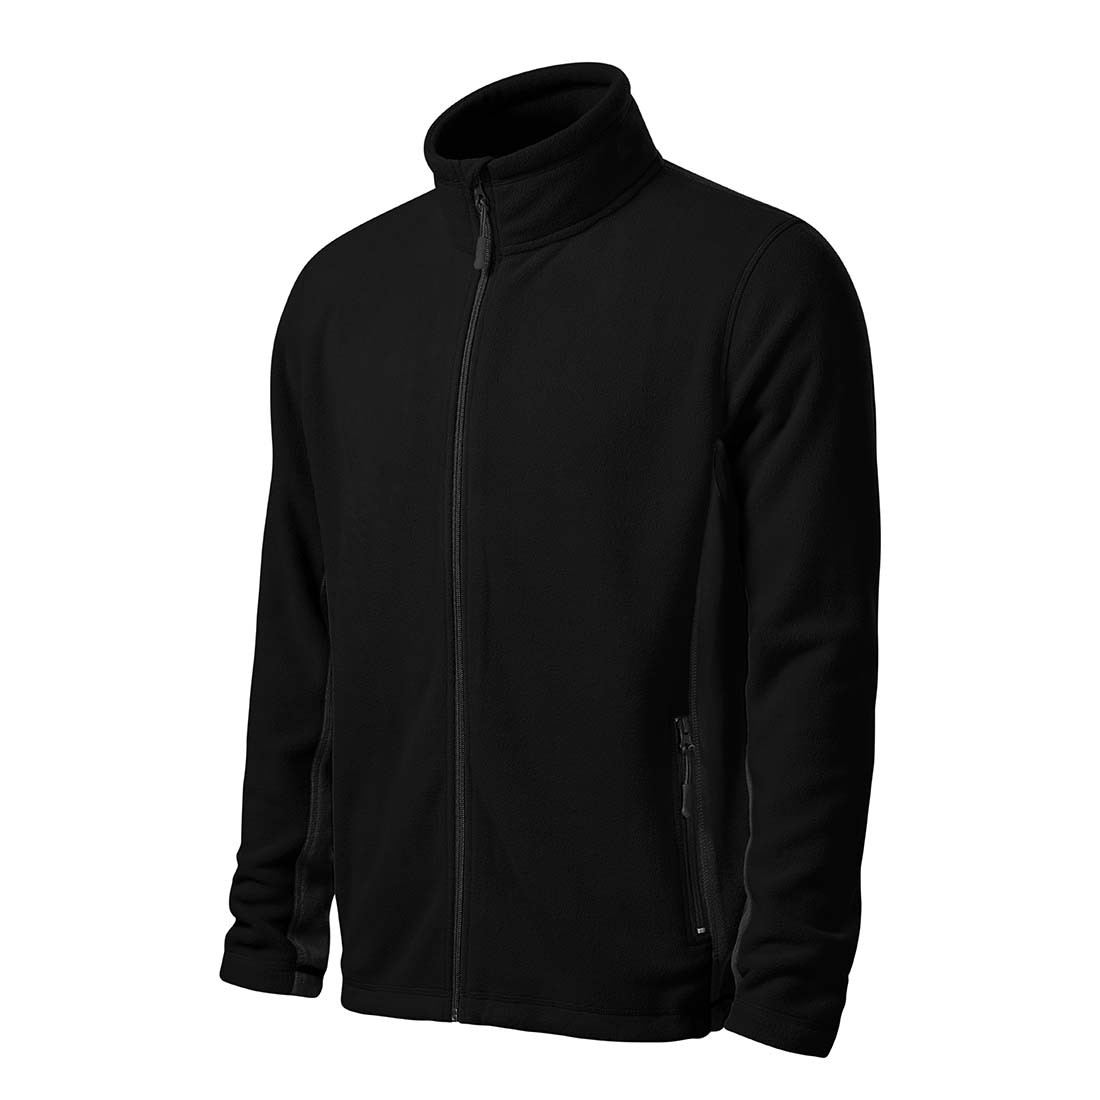 Men's Fleece Jacket - Safetywear